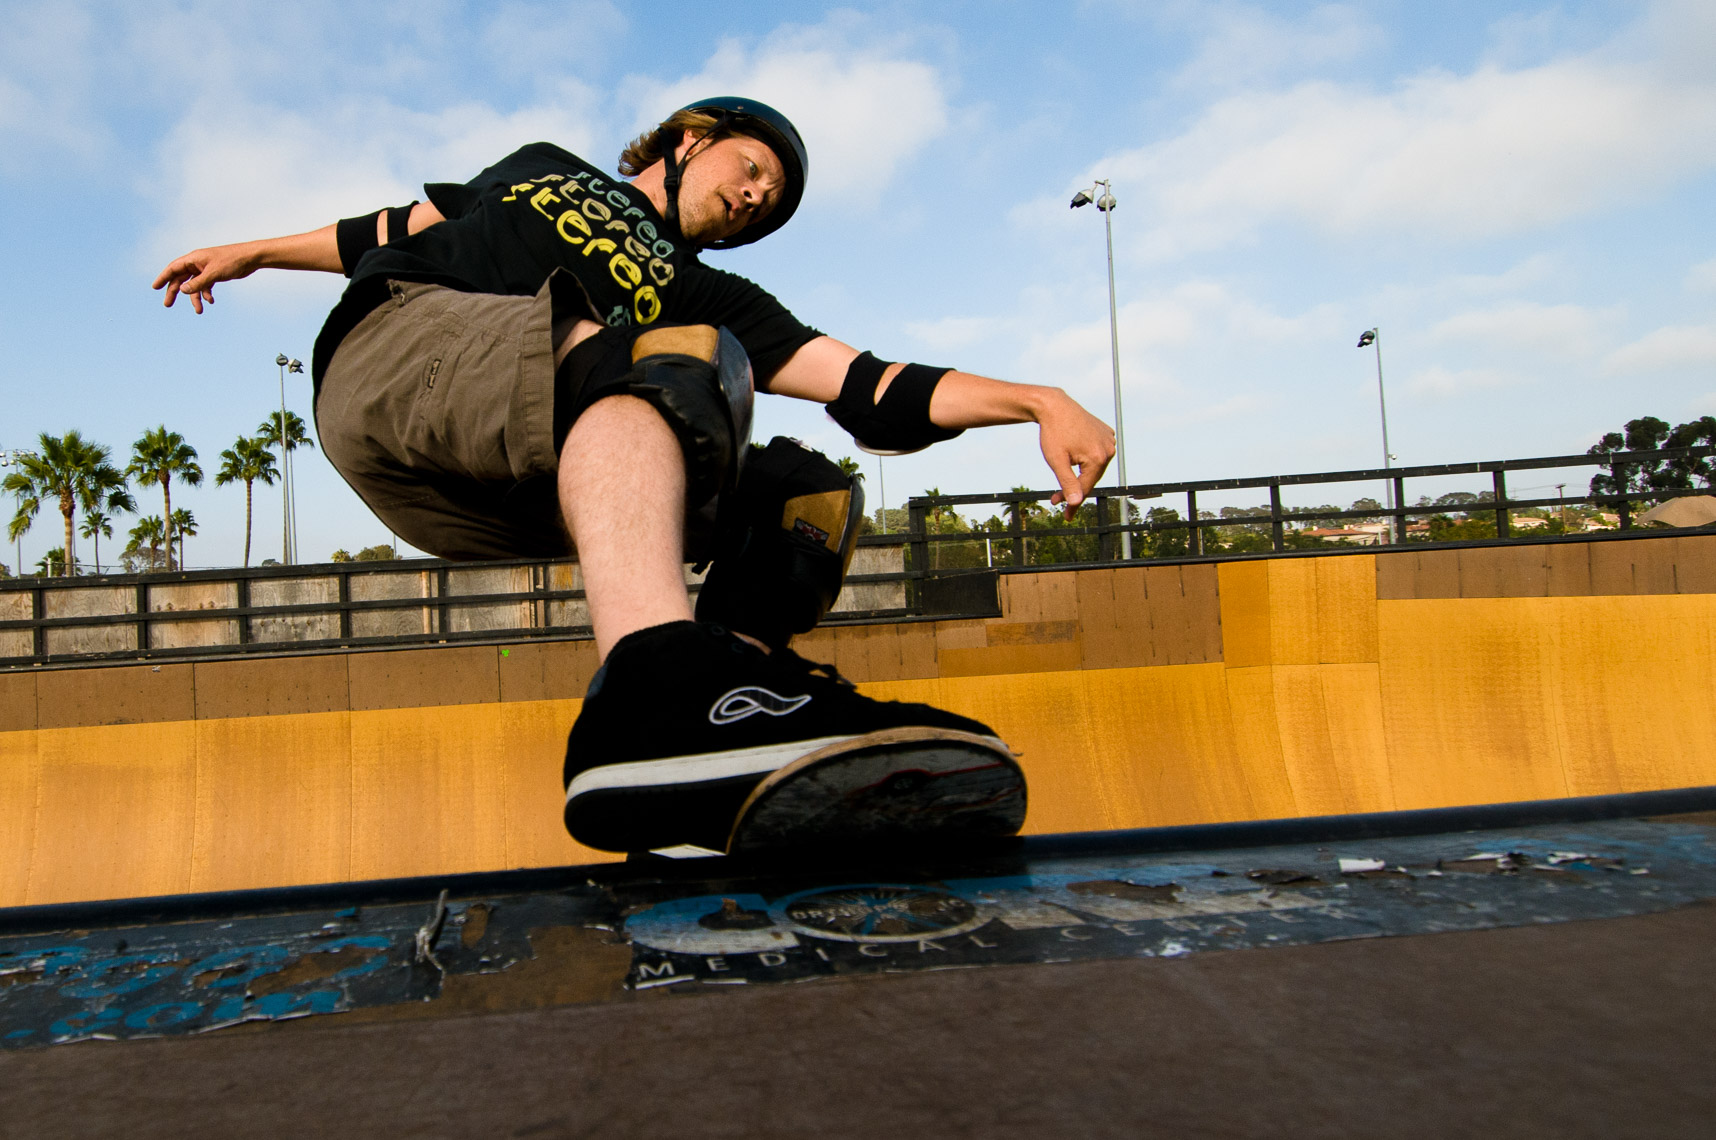 X Games Skateboard Action Sports Photos